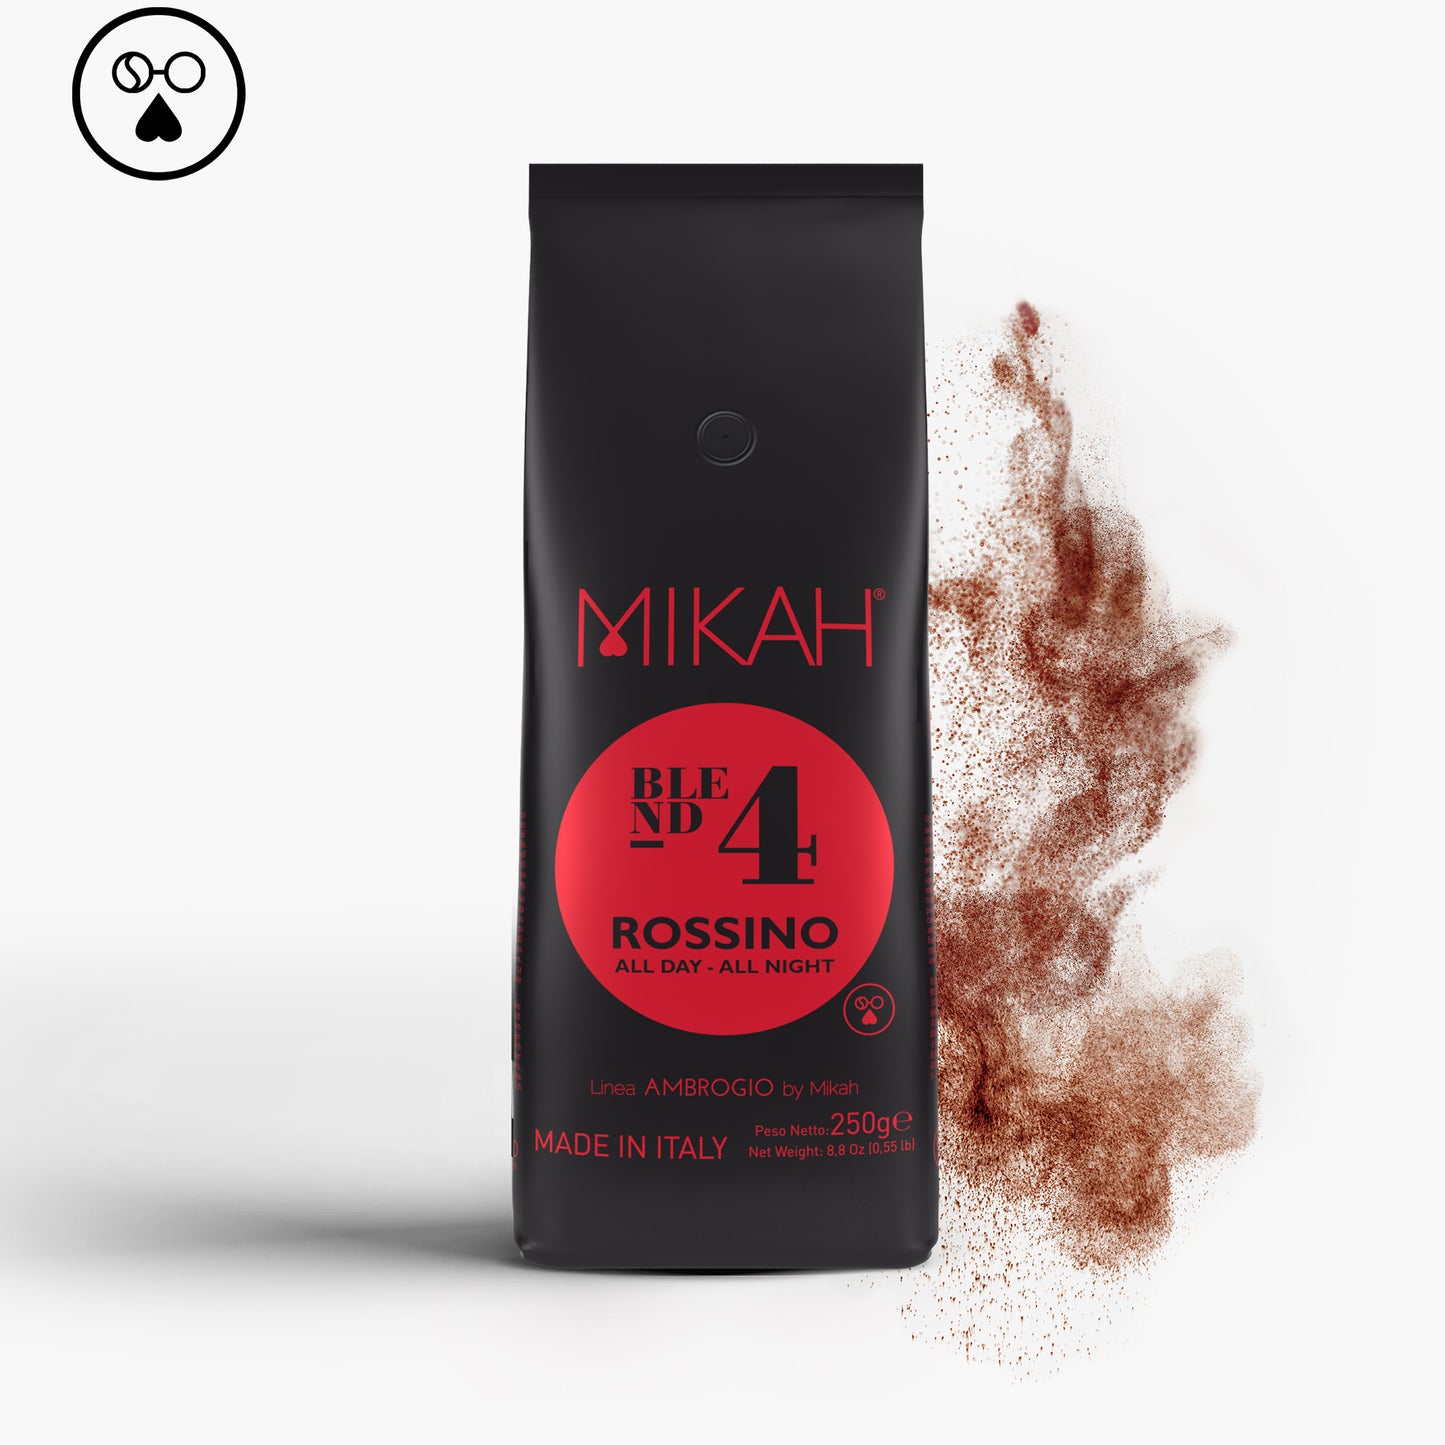 
                  
                    Rossino N.4 - 250gr 美式咖啡/过滤
                  
                